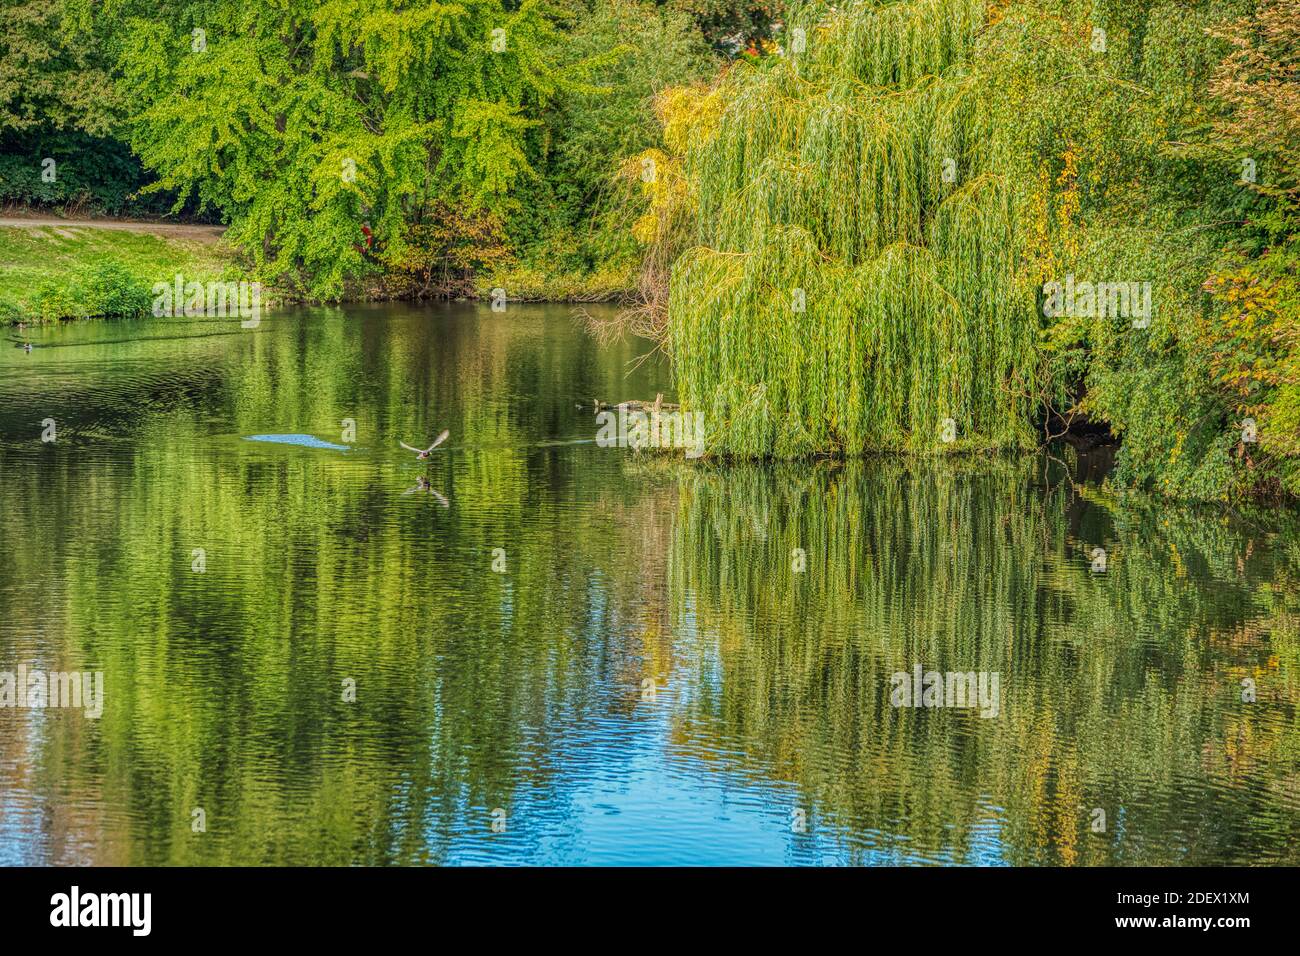 Un pato que se deshace de un estanque entre los árboles que se reflejan en el agua. Un pájaro volando sobre un lago en Orstedsparken transmite el concepto de libertad y libertad Foto de stock